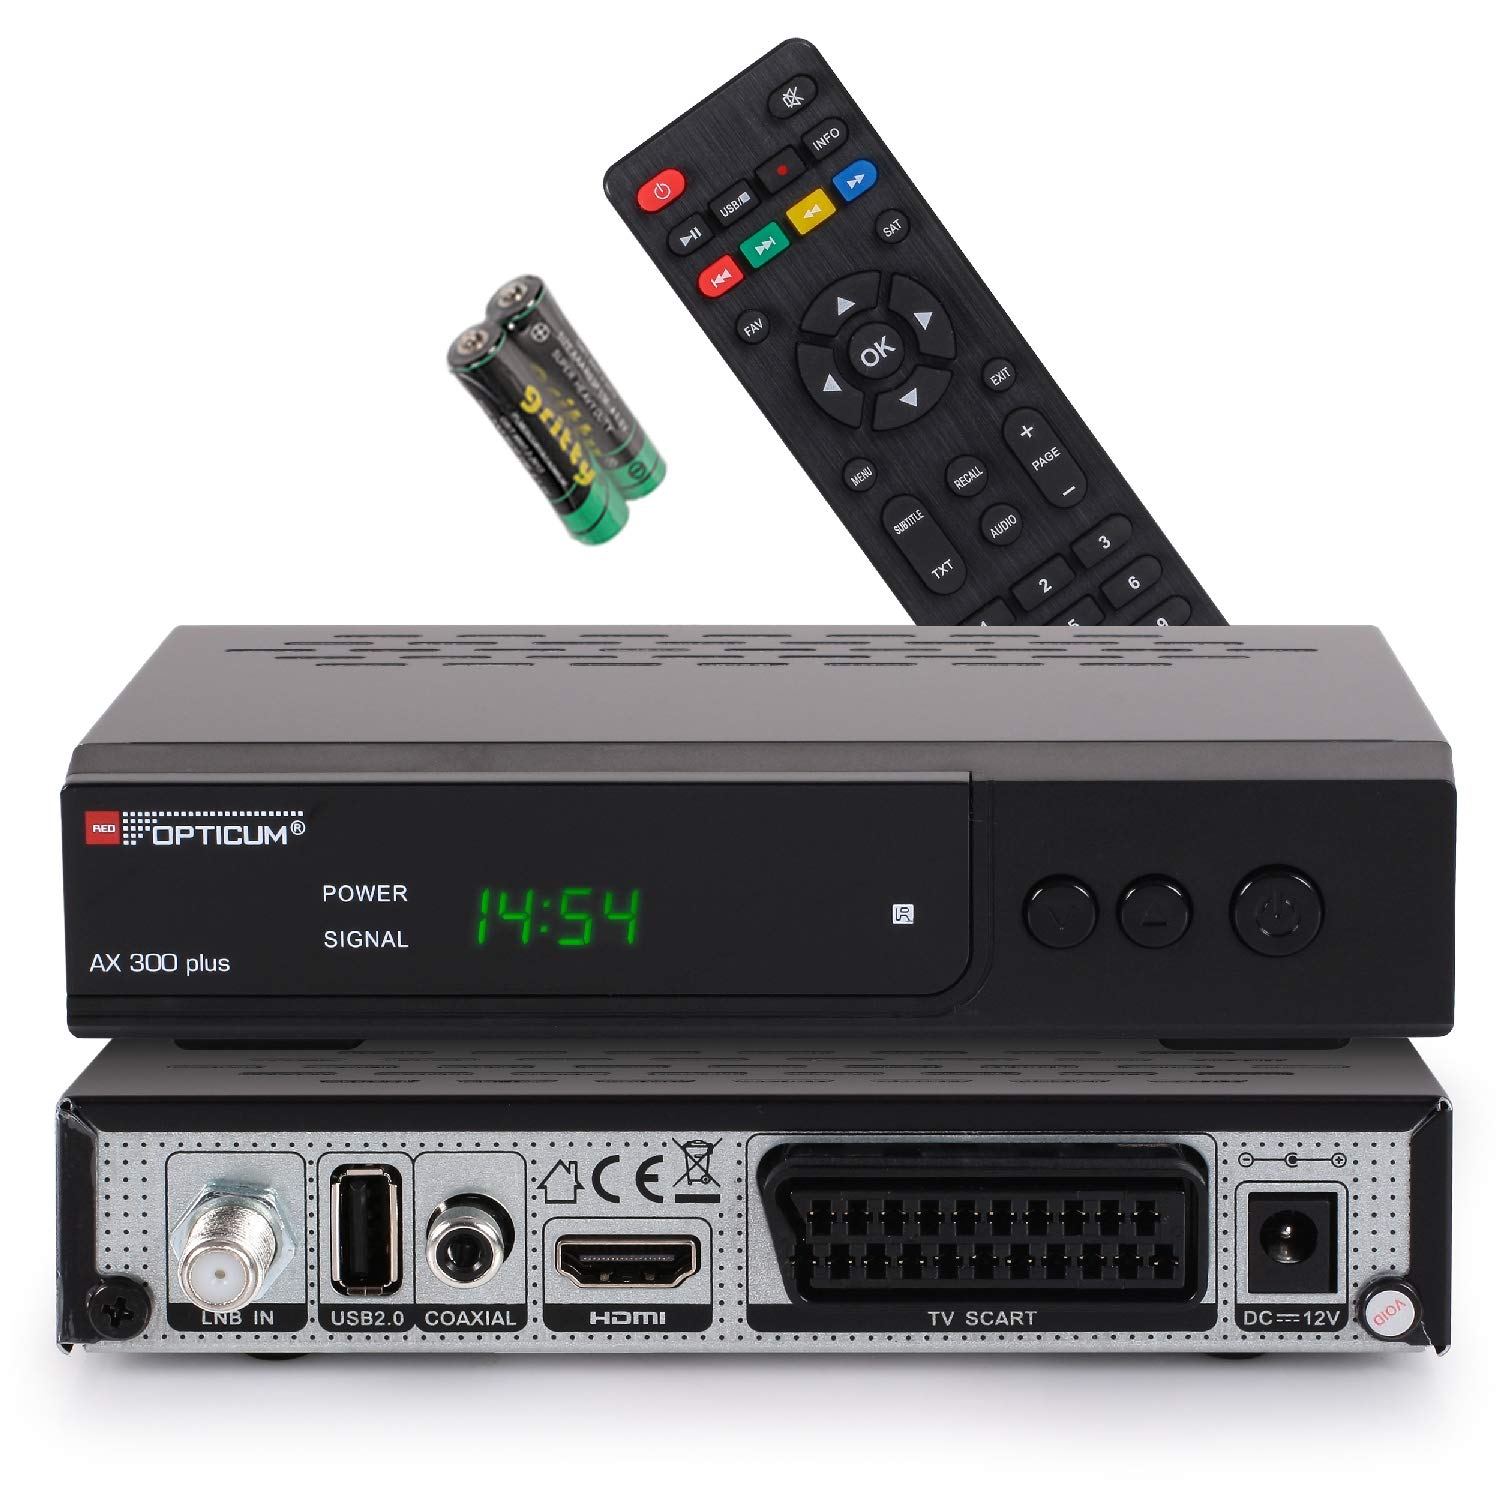 RED OPTICUM AX 300 Plus Sat Receiver I Digitaler Satelliten-Receiver HD - DVB-S2 - HDMI - SCART - USB 2.0 - Coaxial Audio I 12V Netzteil ideal für Camping I Receiver für Satellitenschüssel Schwarz